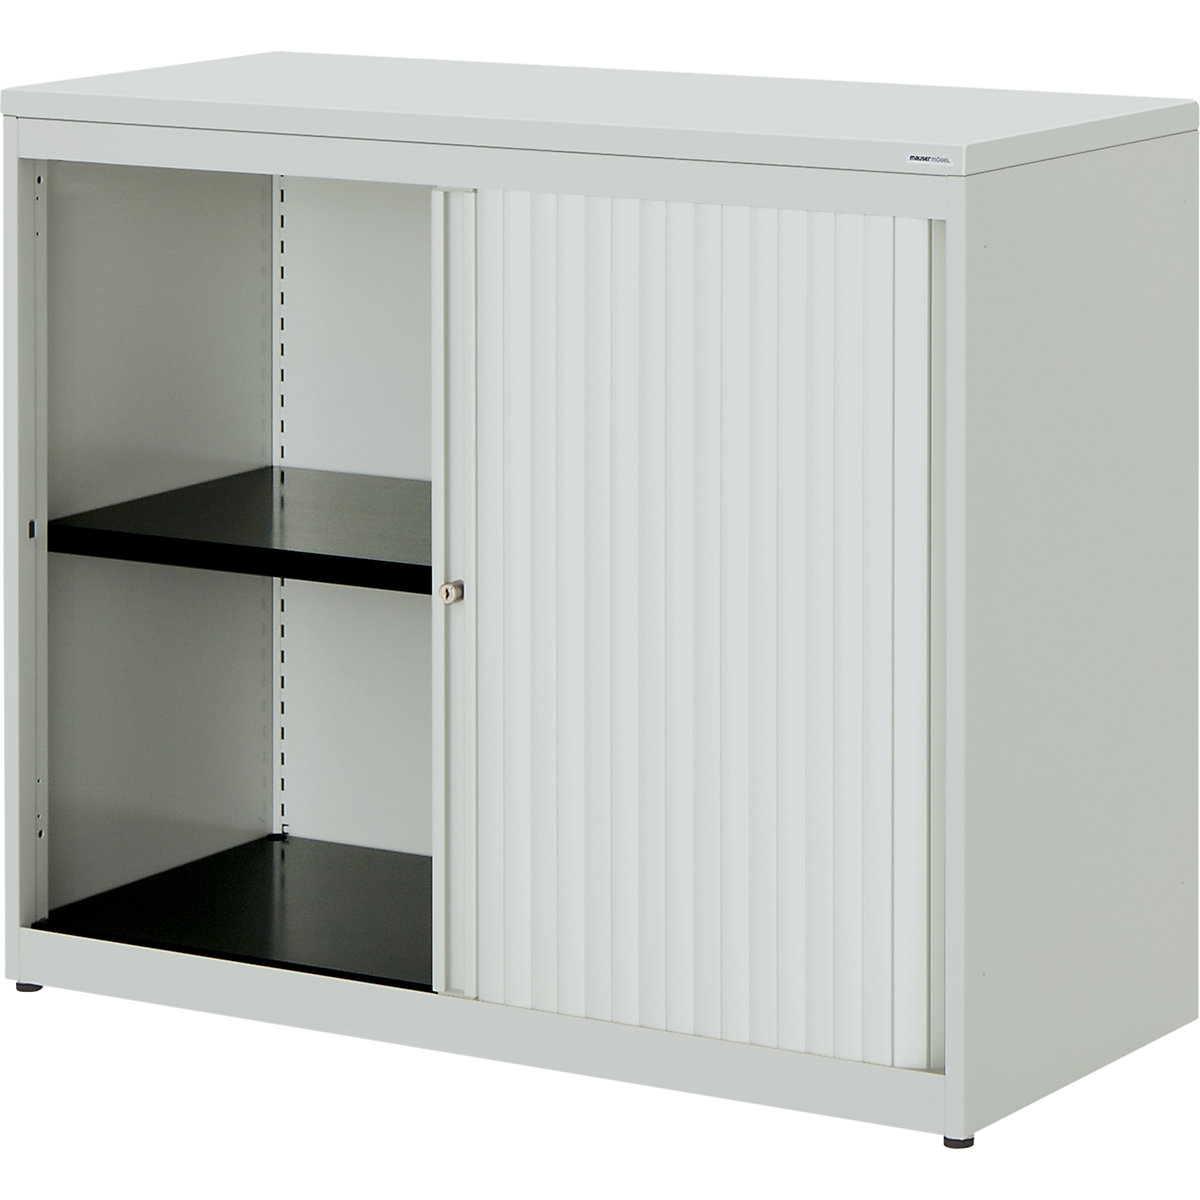 Horizontal roller shutter cupboard – mauser, HxWxD 830 x 1000 x 432 mm, plastic panel, 1 shelf, light grey / light grey / light grey-3